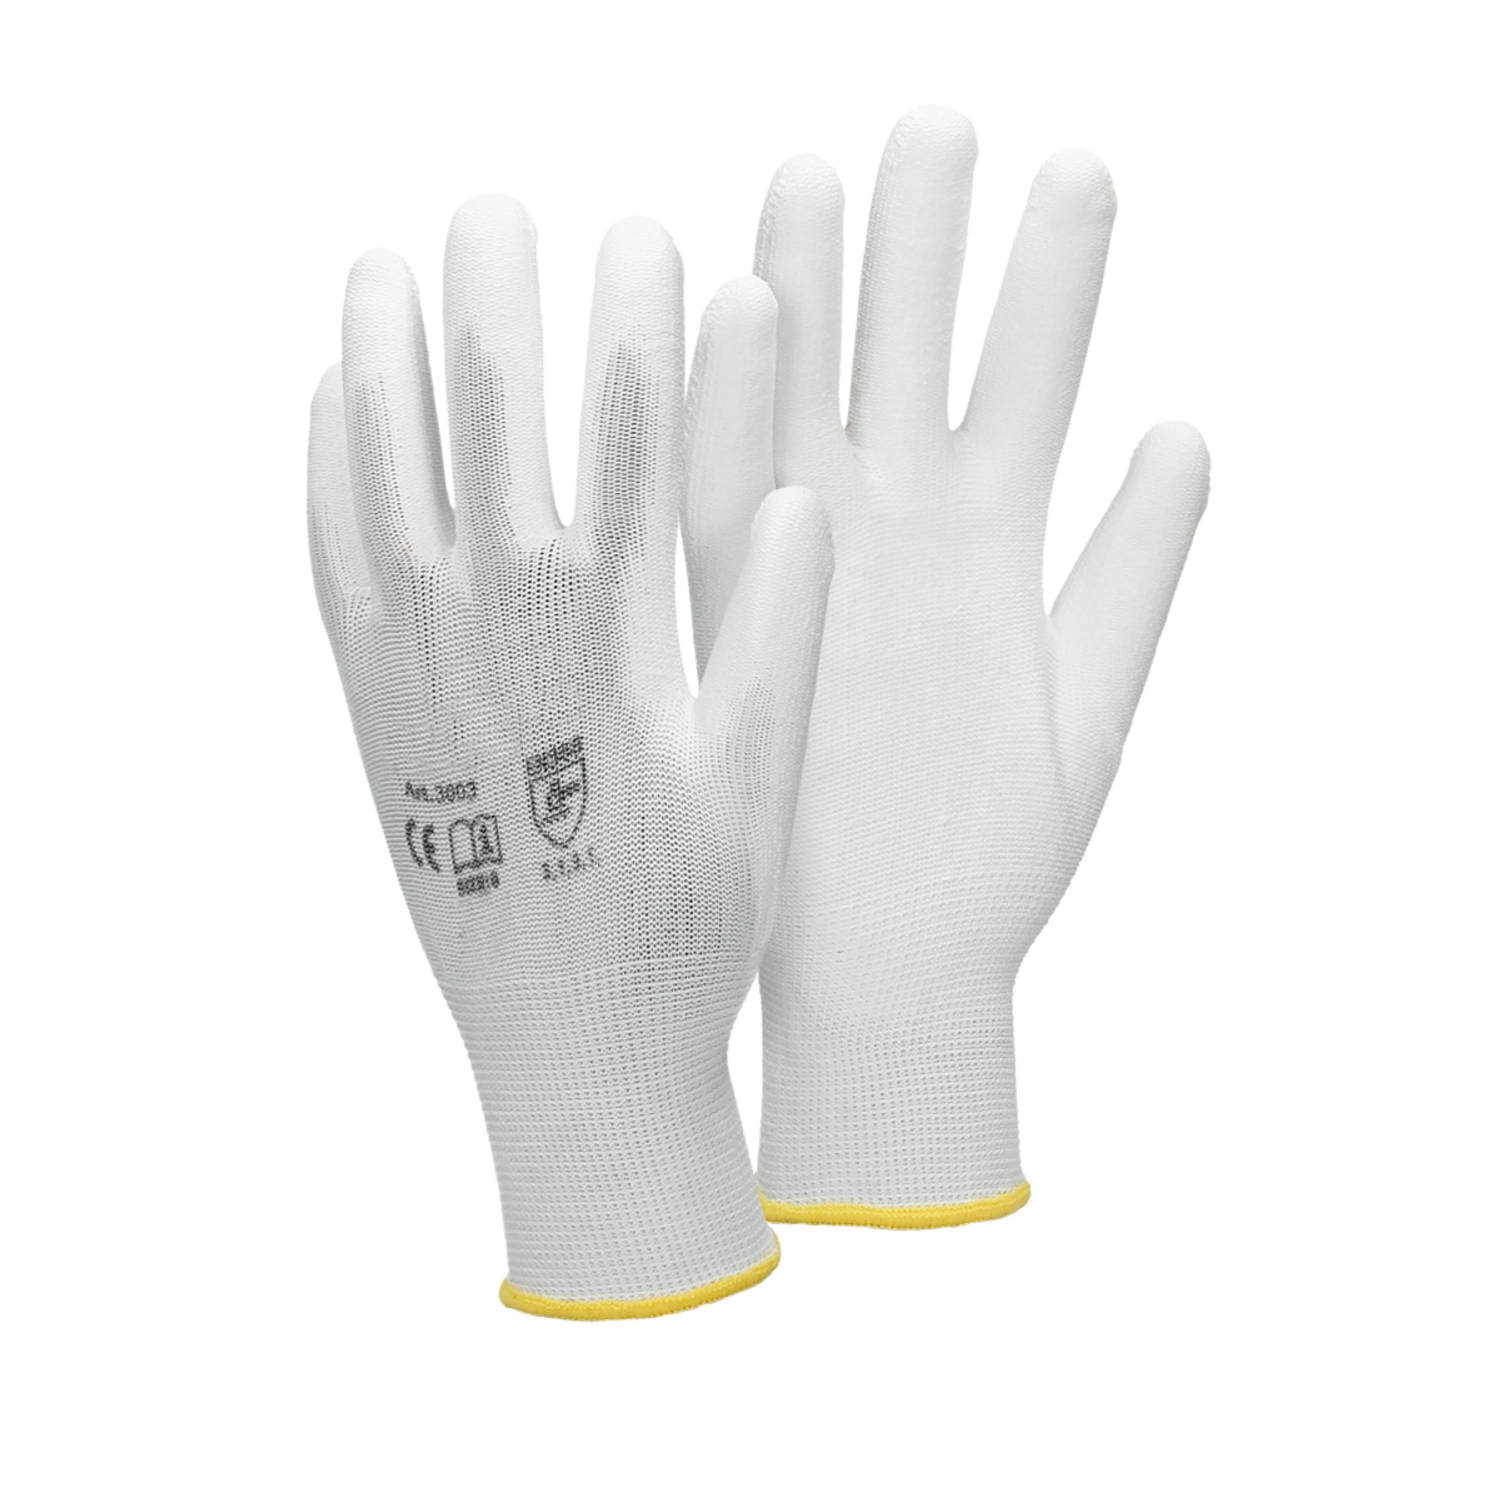 ECD Germany 12 paar werkhandschoenen met PU coating - maat 8-M - wit - monteurshandschoenen montagehandschoenen beschermende handschoenen tuinhandschoenen - diverse kleuren & maten